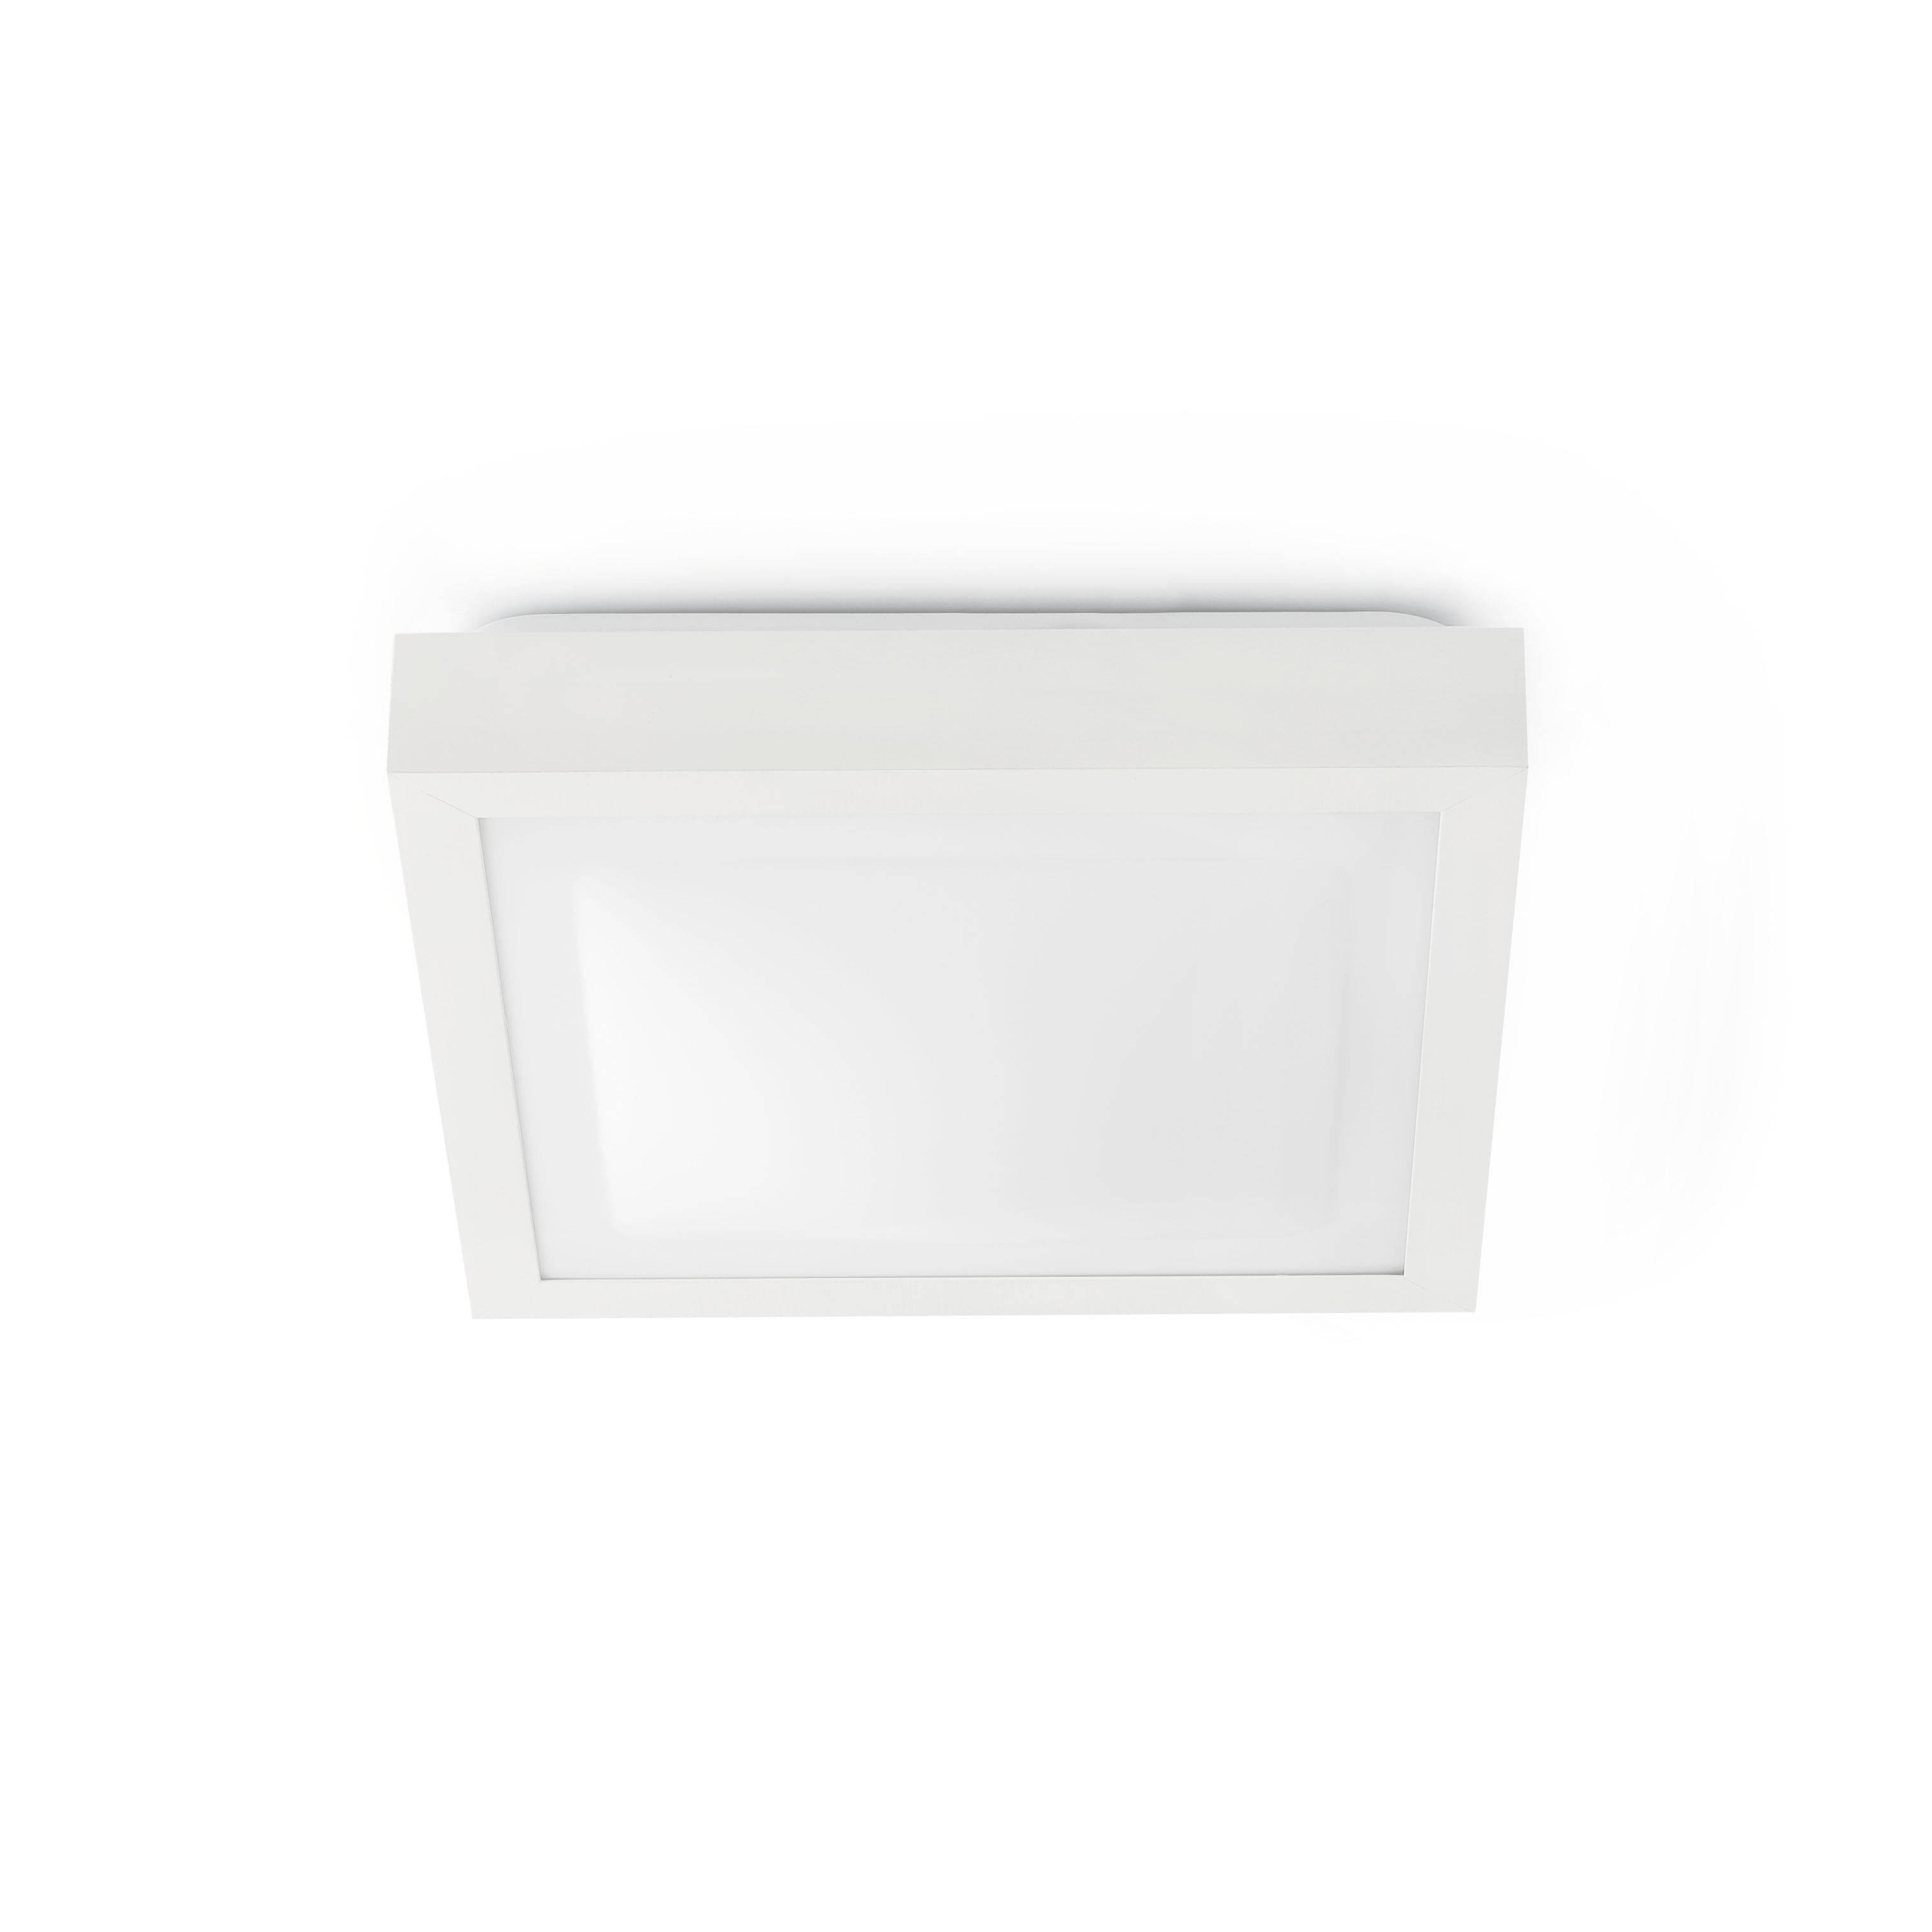 Tola 2 Light Medium Square Bathroom Flush Ceiling Light Aluminium White IP44 E27 - image 1